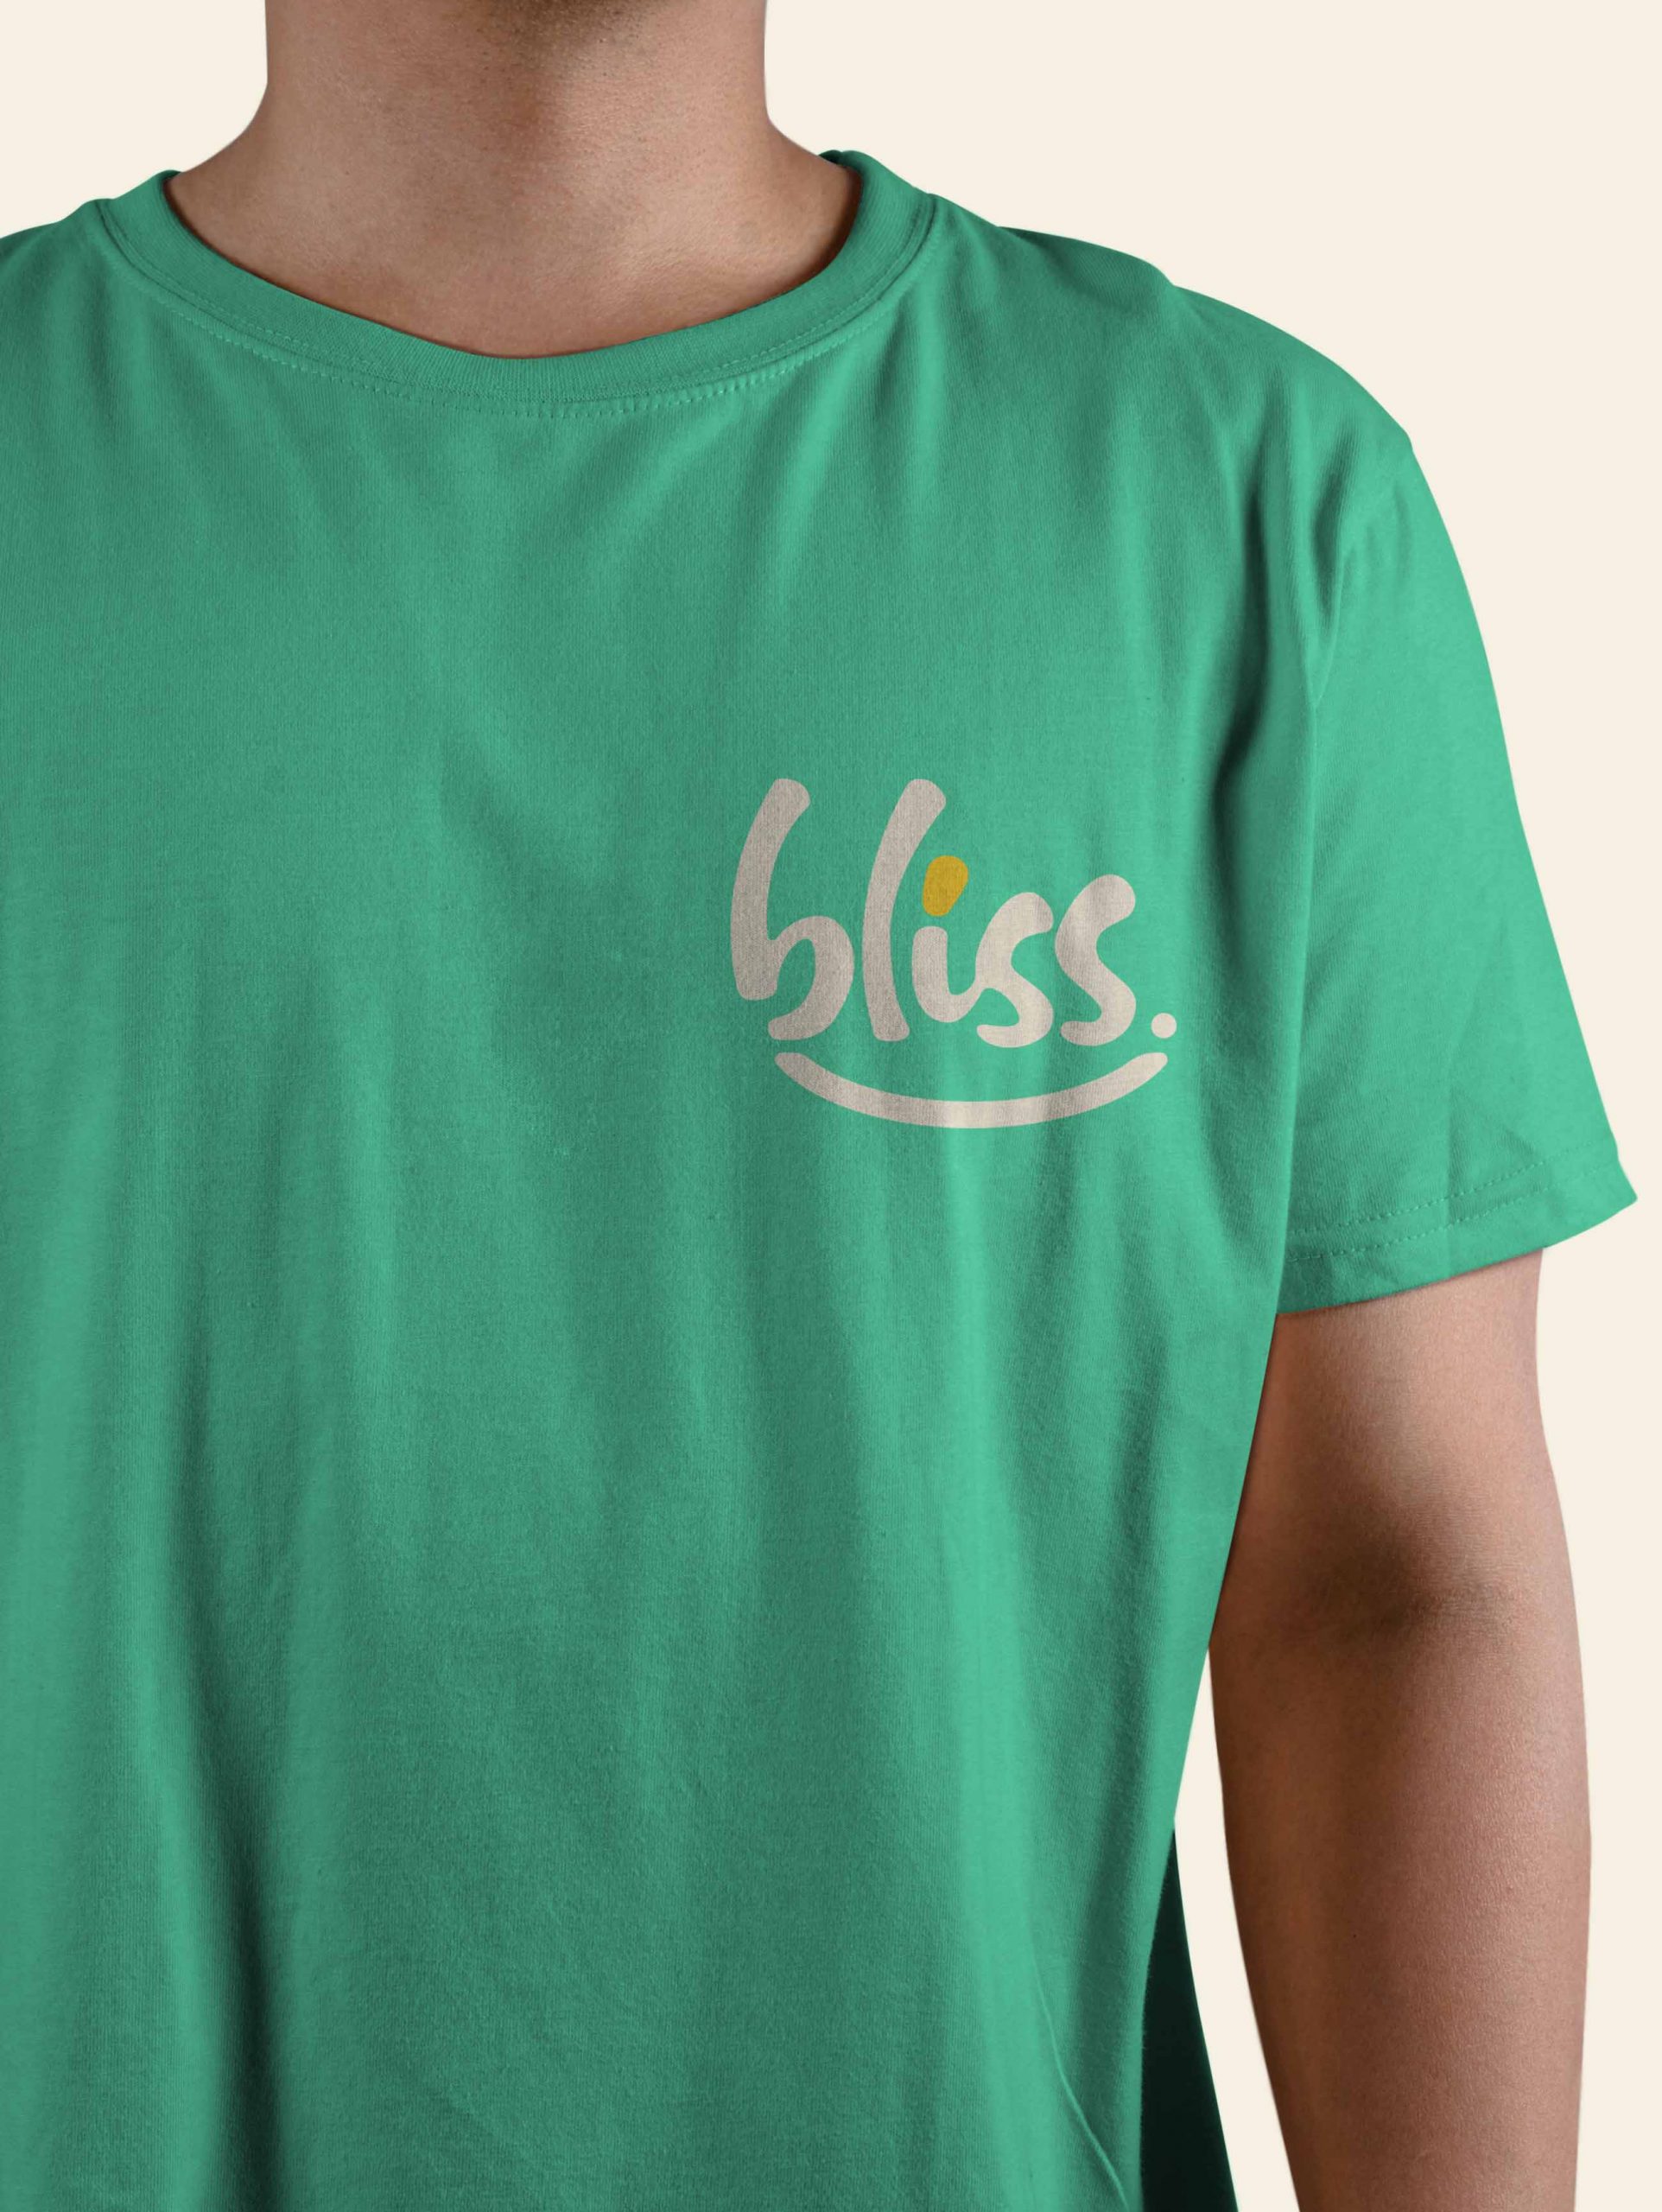 Bliss_T-shirt_Design.jpg